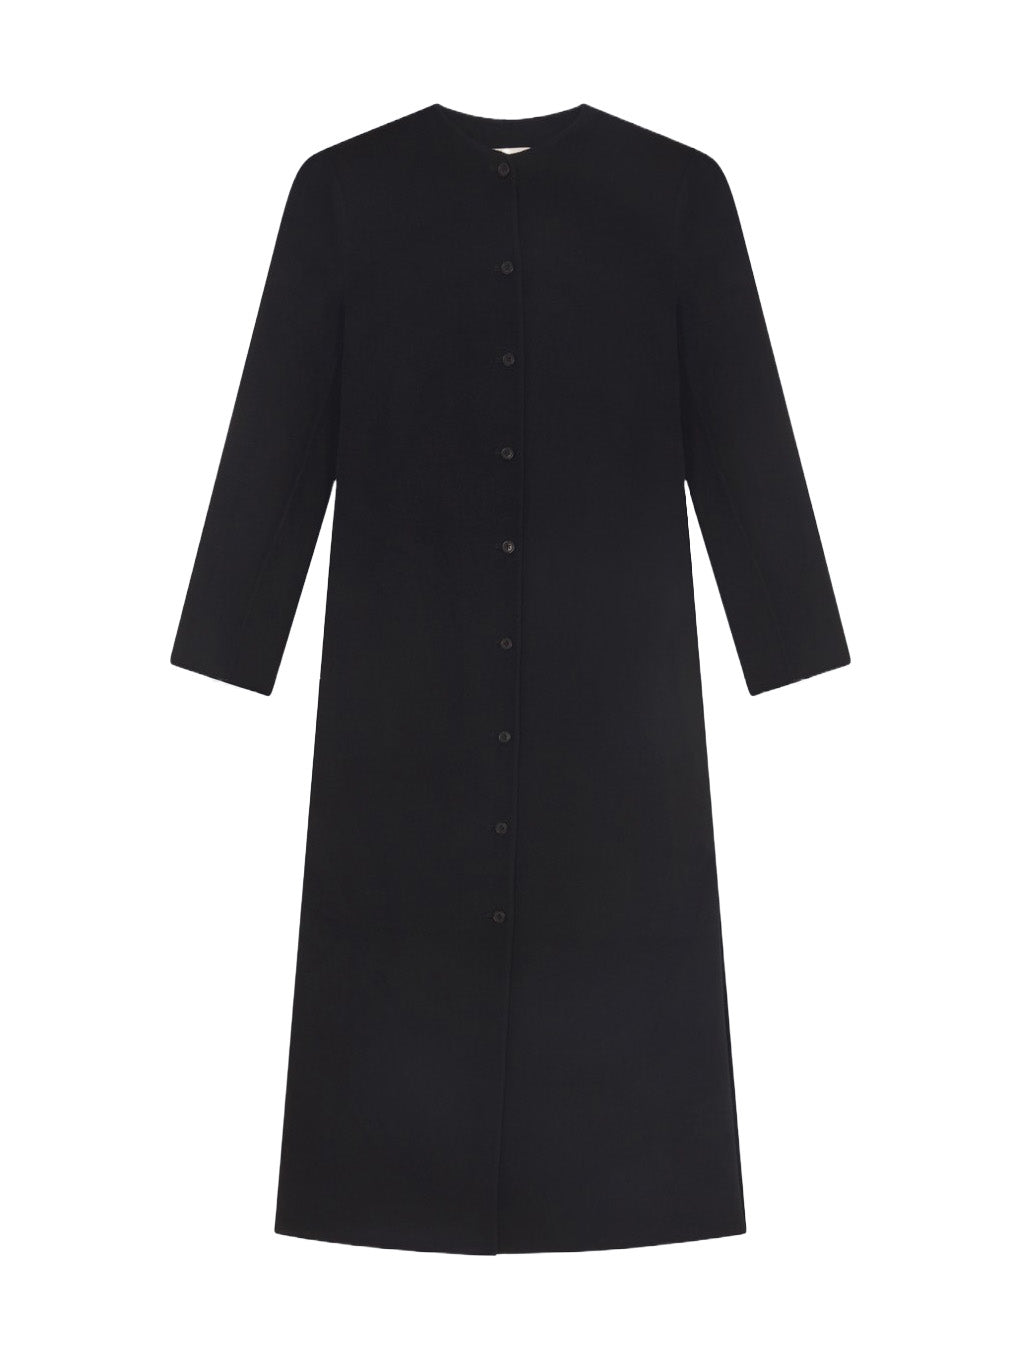 MARTIL Wool Cashmere Long Coat in Black